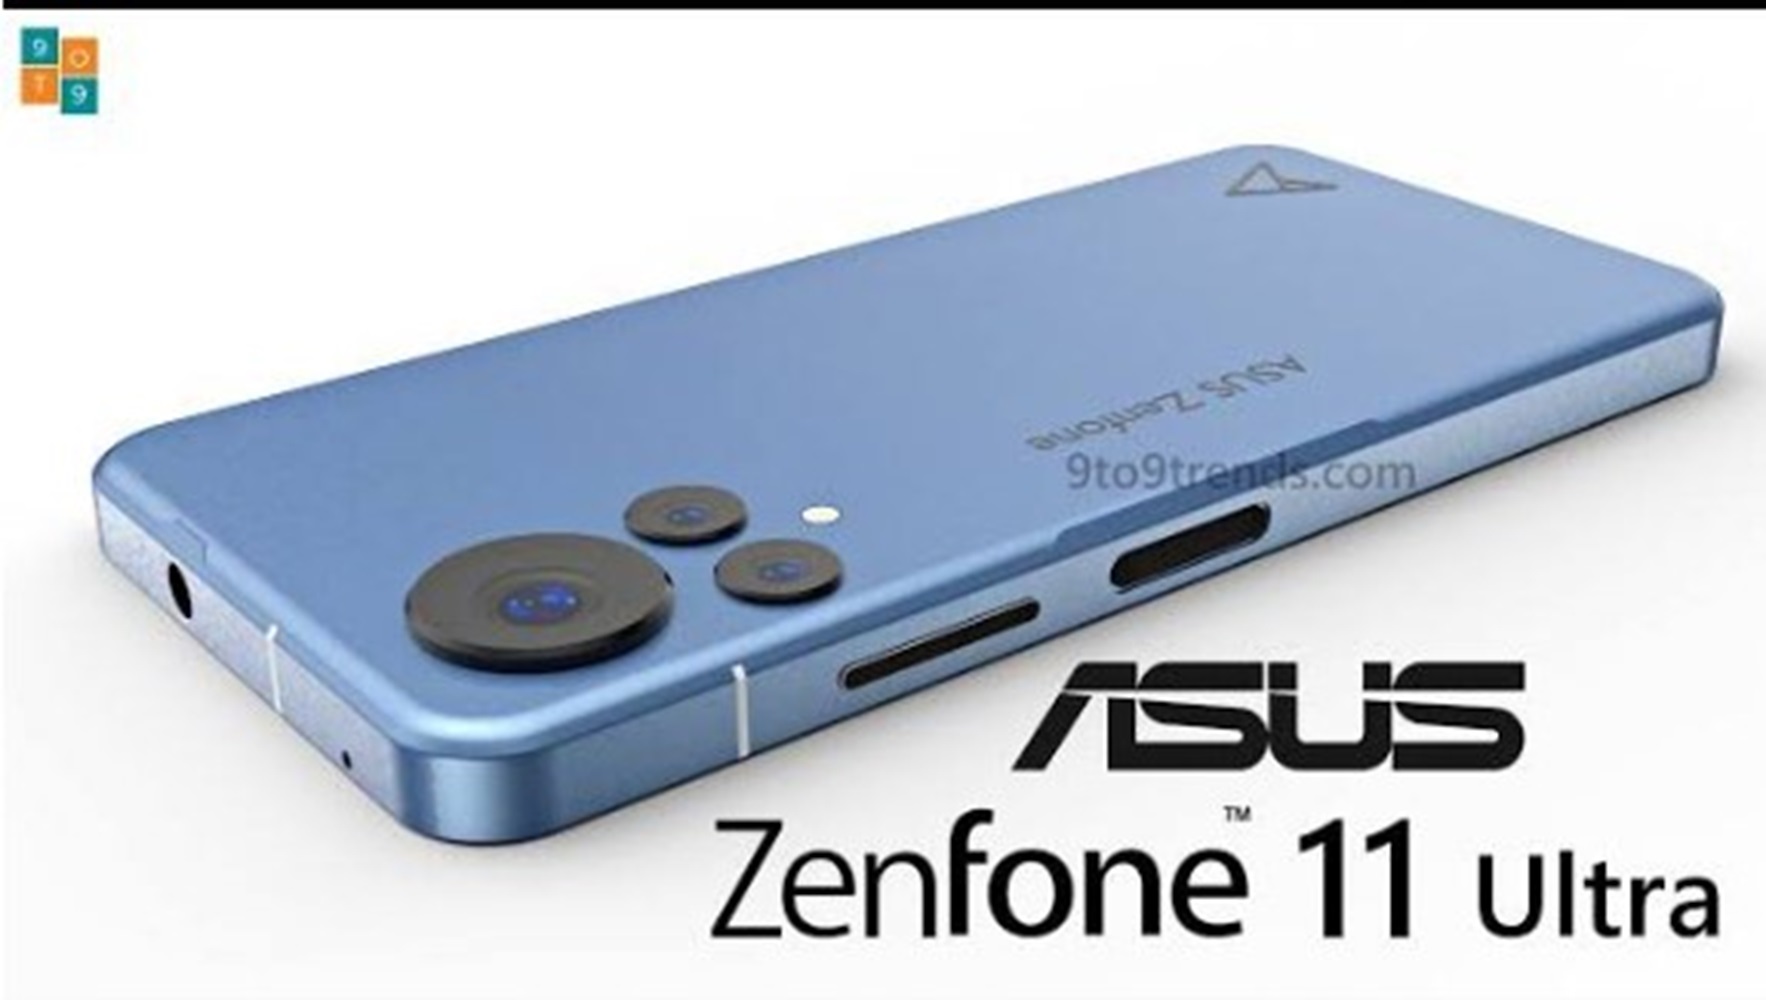 Zenfone 11 Ultra, Flagship Terbaru Asus Punya RAM 16 dan SD 8 Gen 3, Rilis 14 April Mendatang